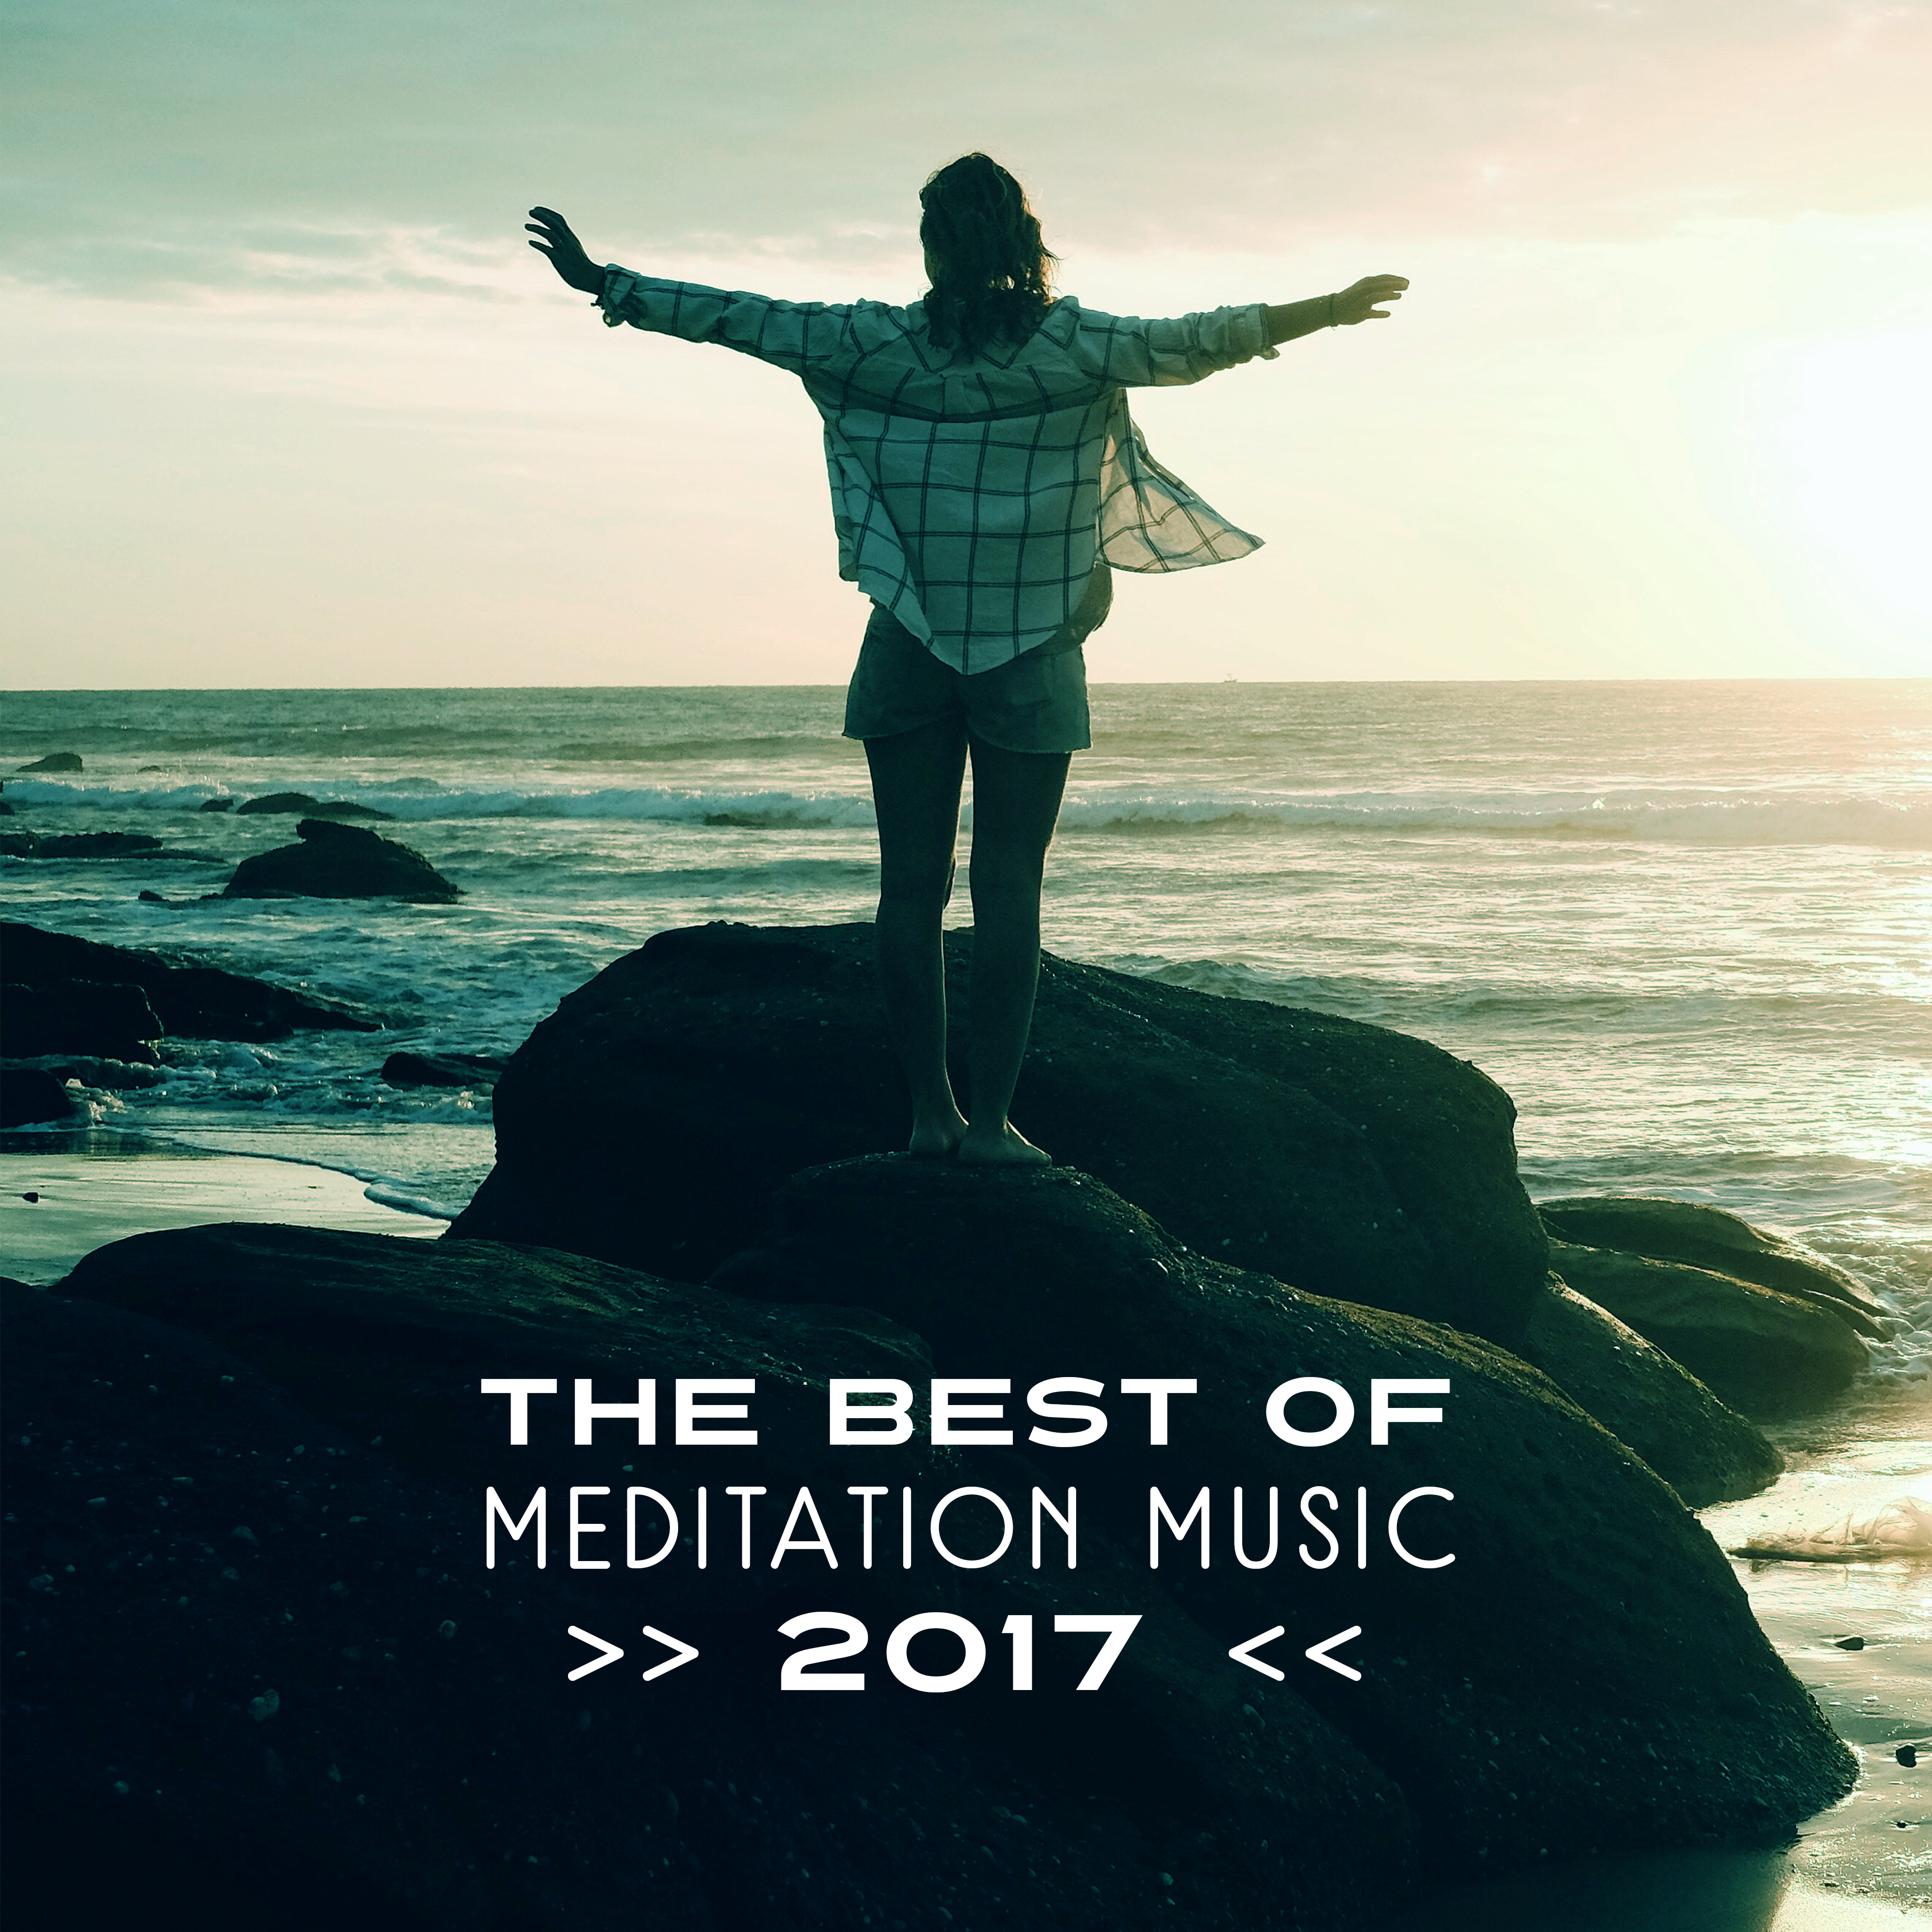 The Best of Meditation Music 2017 – Relaxing Music, New Age, Deep Meditation, Music for Yoga, Zen, Reiki, Full of Calmness